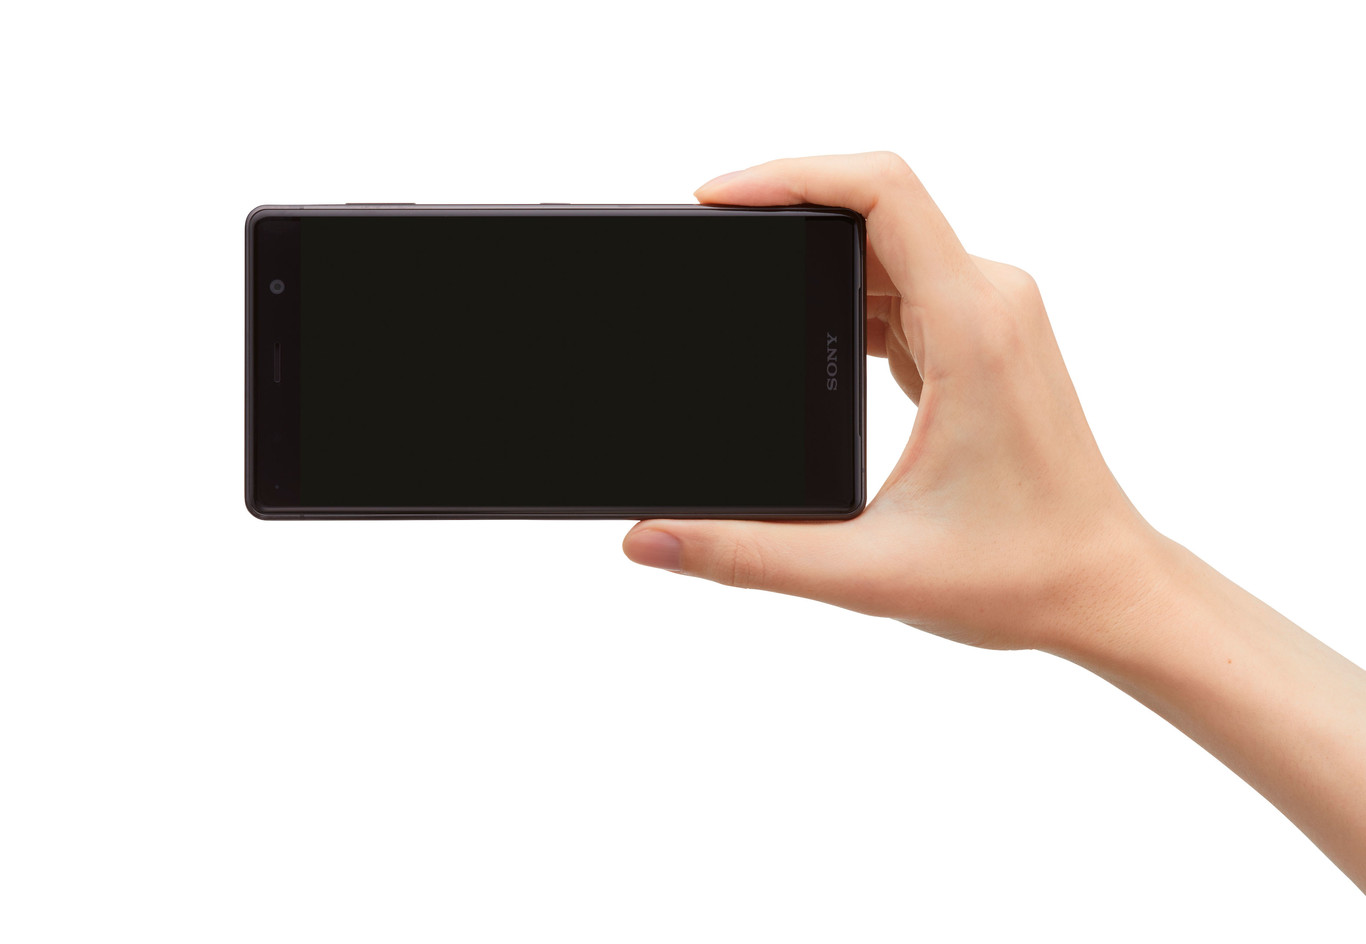 Анонс Sony Xperia XZ2 Premium: 4К-дисплей и продвинутая сверхчувствительная двойная камера